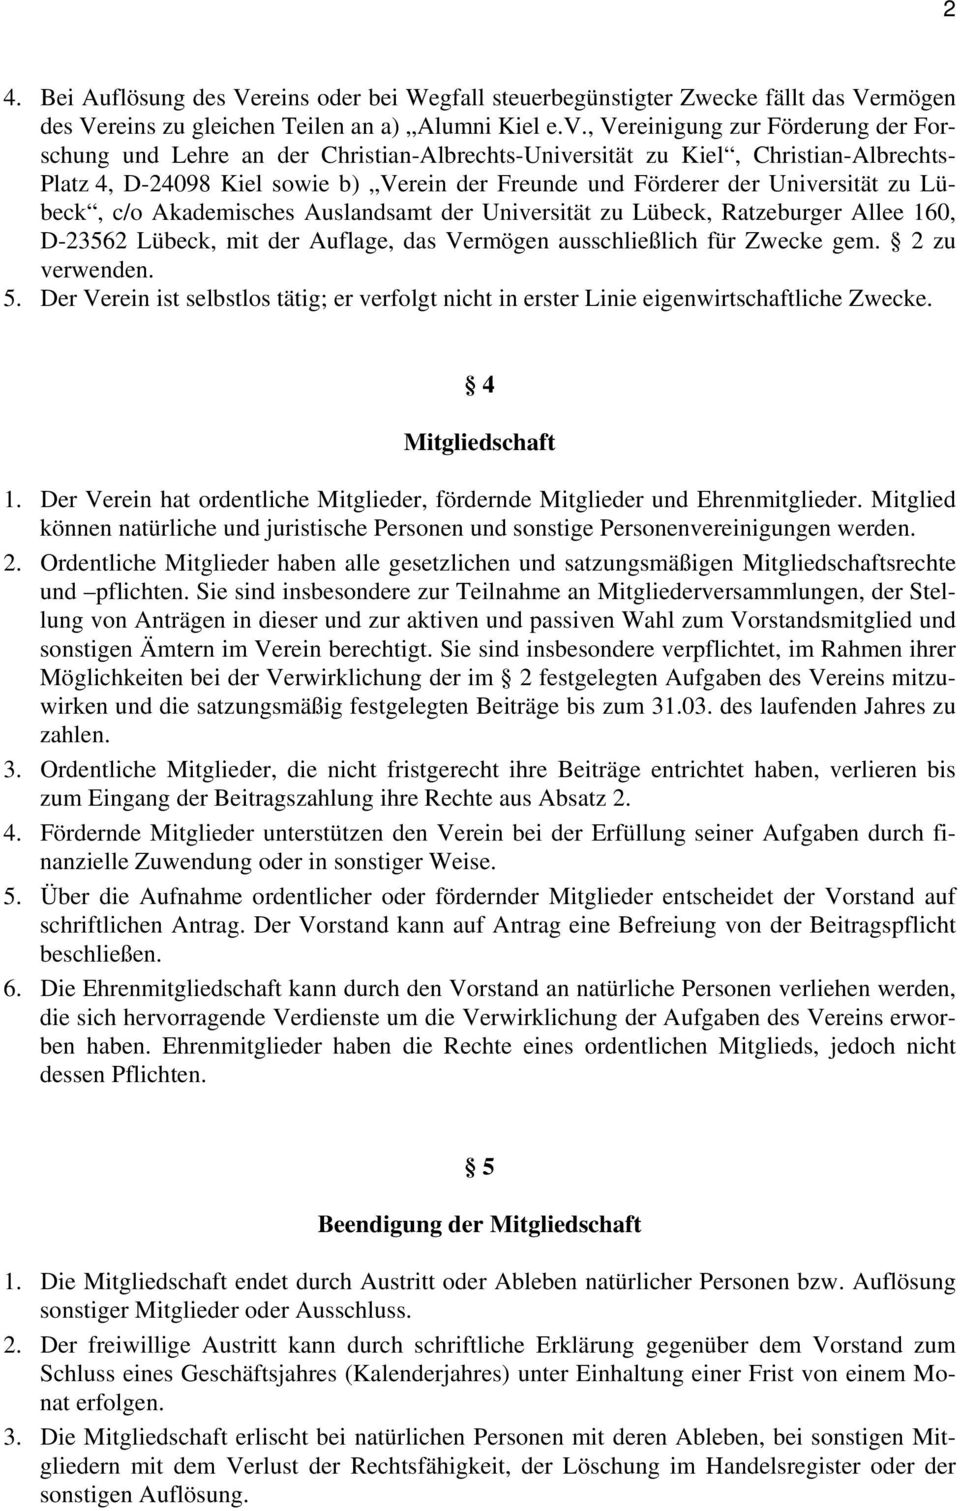 zu Lübeck, c/o Akademisches Auslandsamt der Universität zu Lübeck, Ratzeburger Allee 160, D-23562 Lübeck, mit der Auflage, das Vermögen ausschließlich für Zwecke gem. 2 zu verwenden. 5.